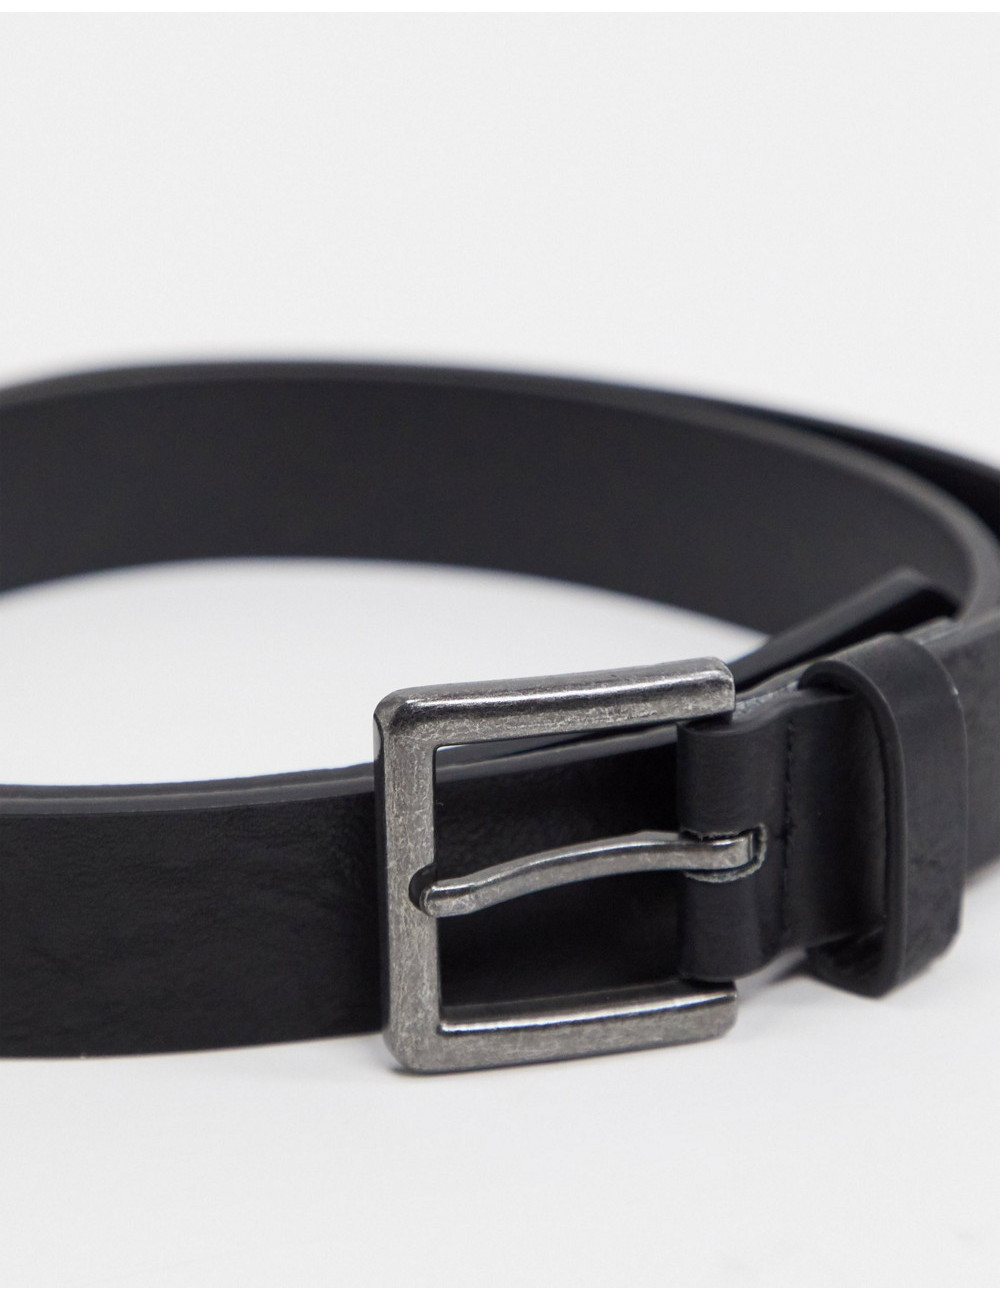 Topman belt in black